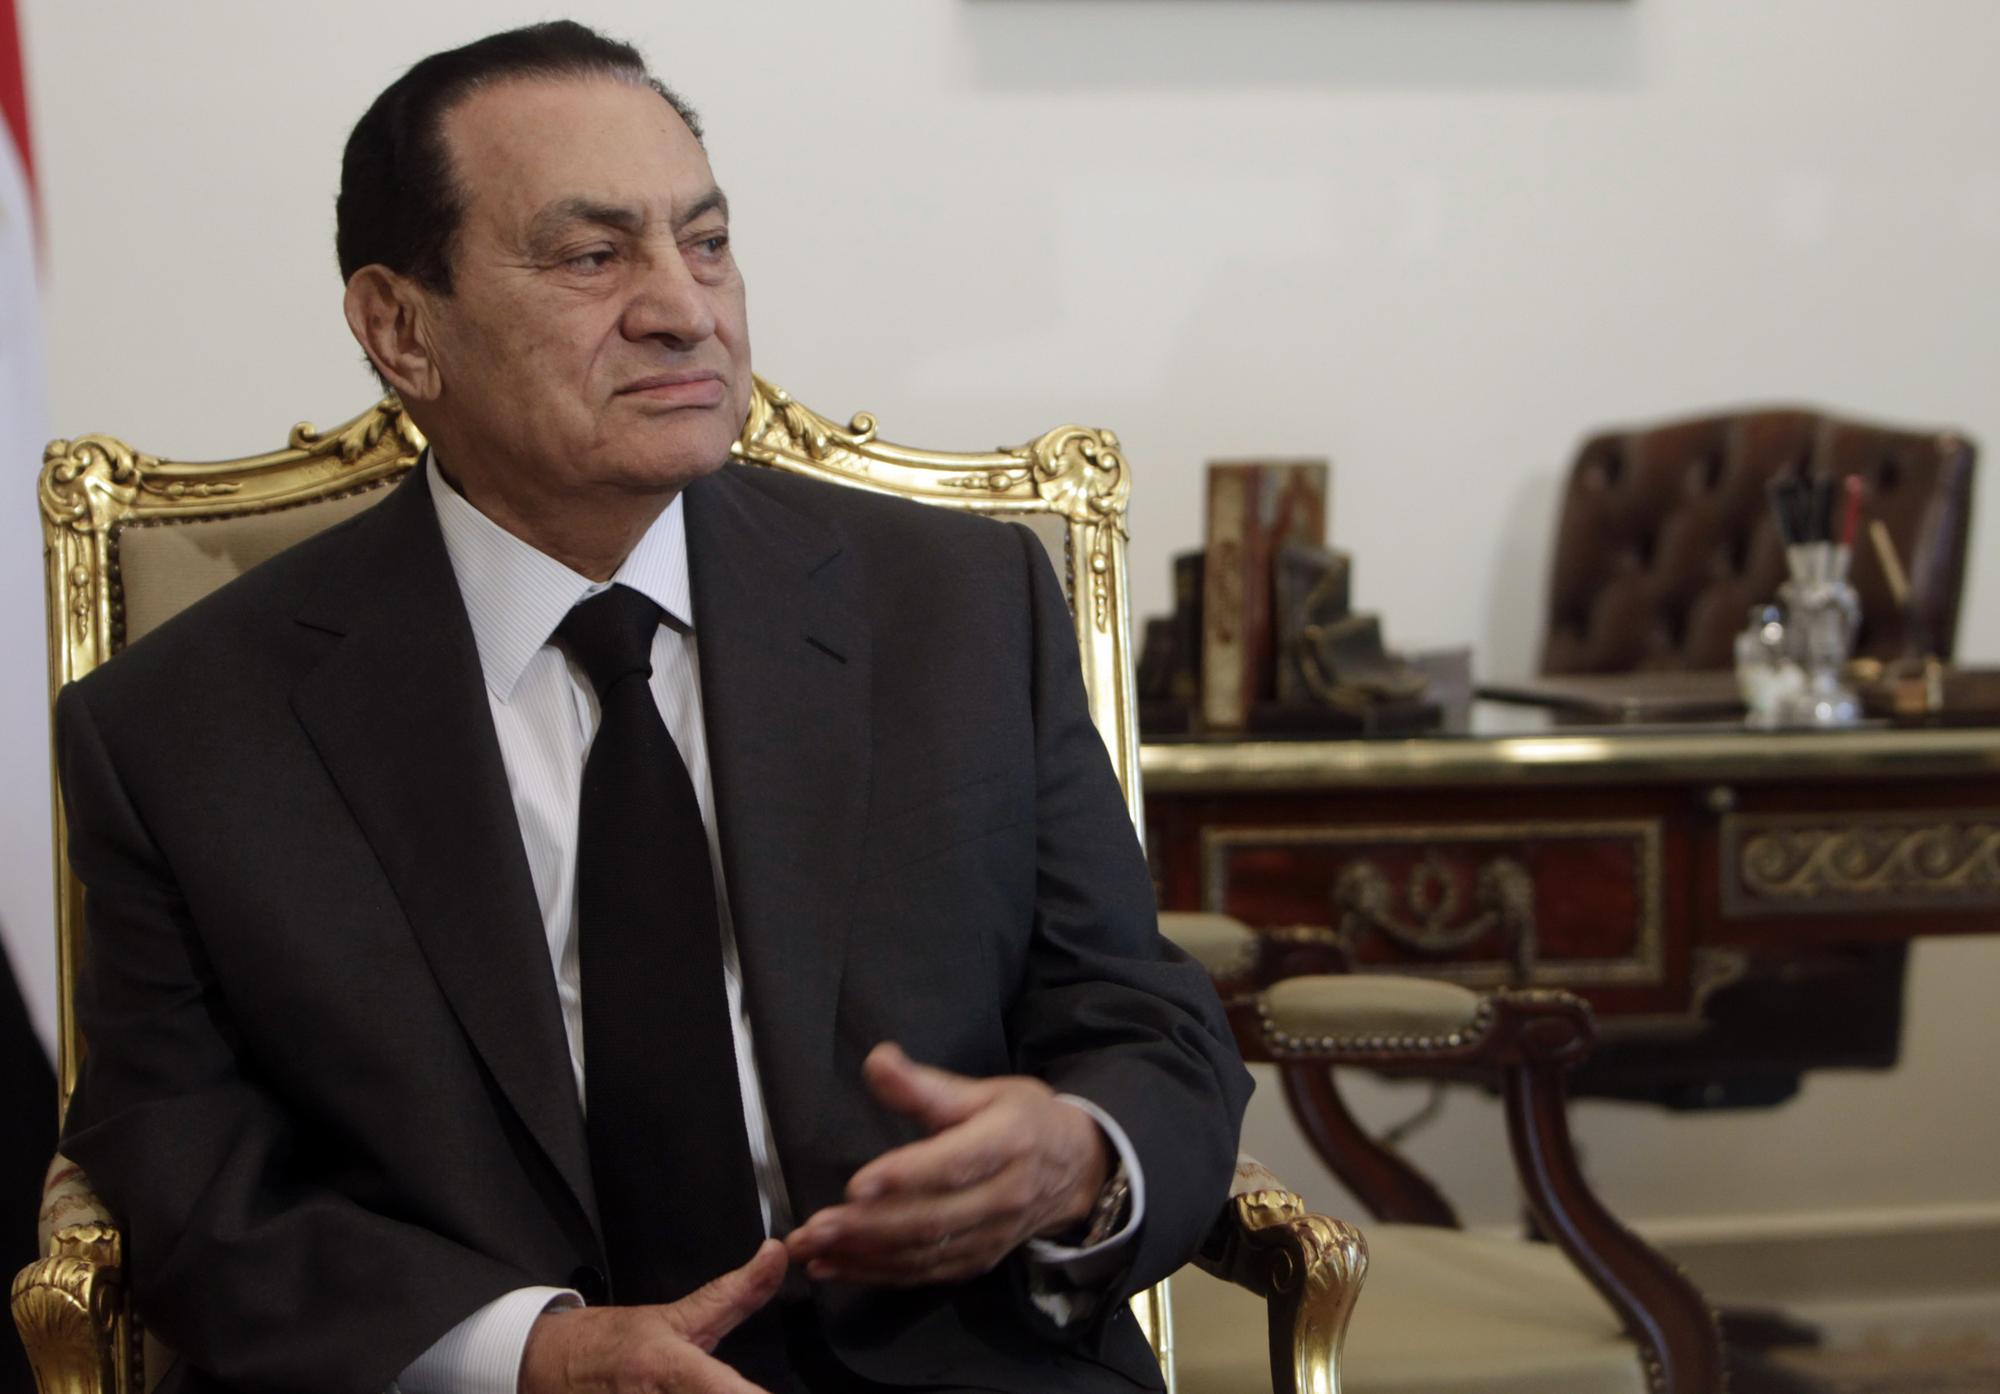 La situation à la tête de l'Etat est de moins en moins confortable pour Hosni Moubarak. [Amr Abdallah Dalsh]